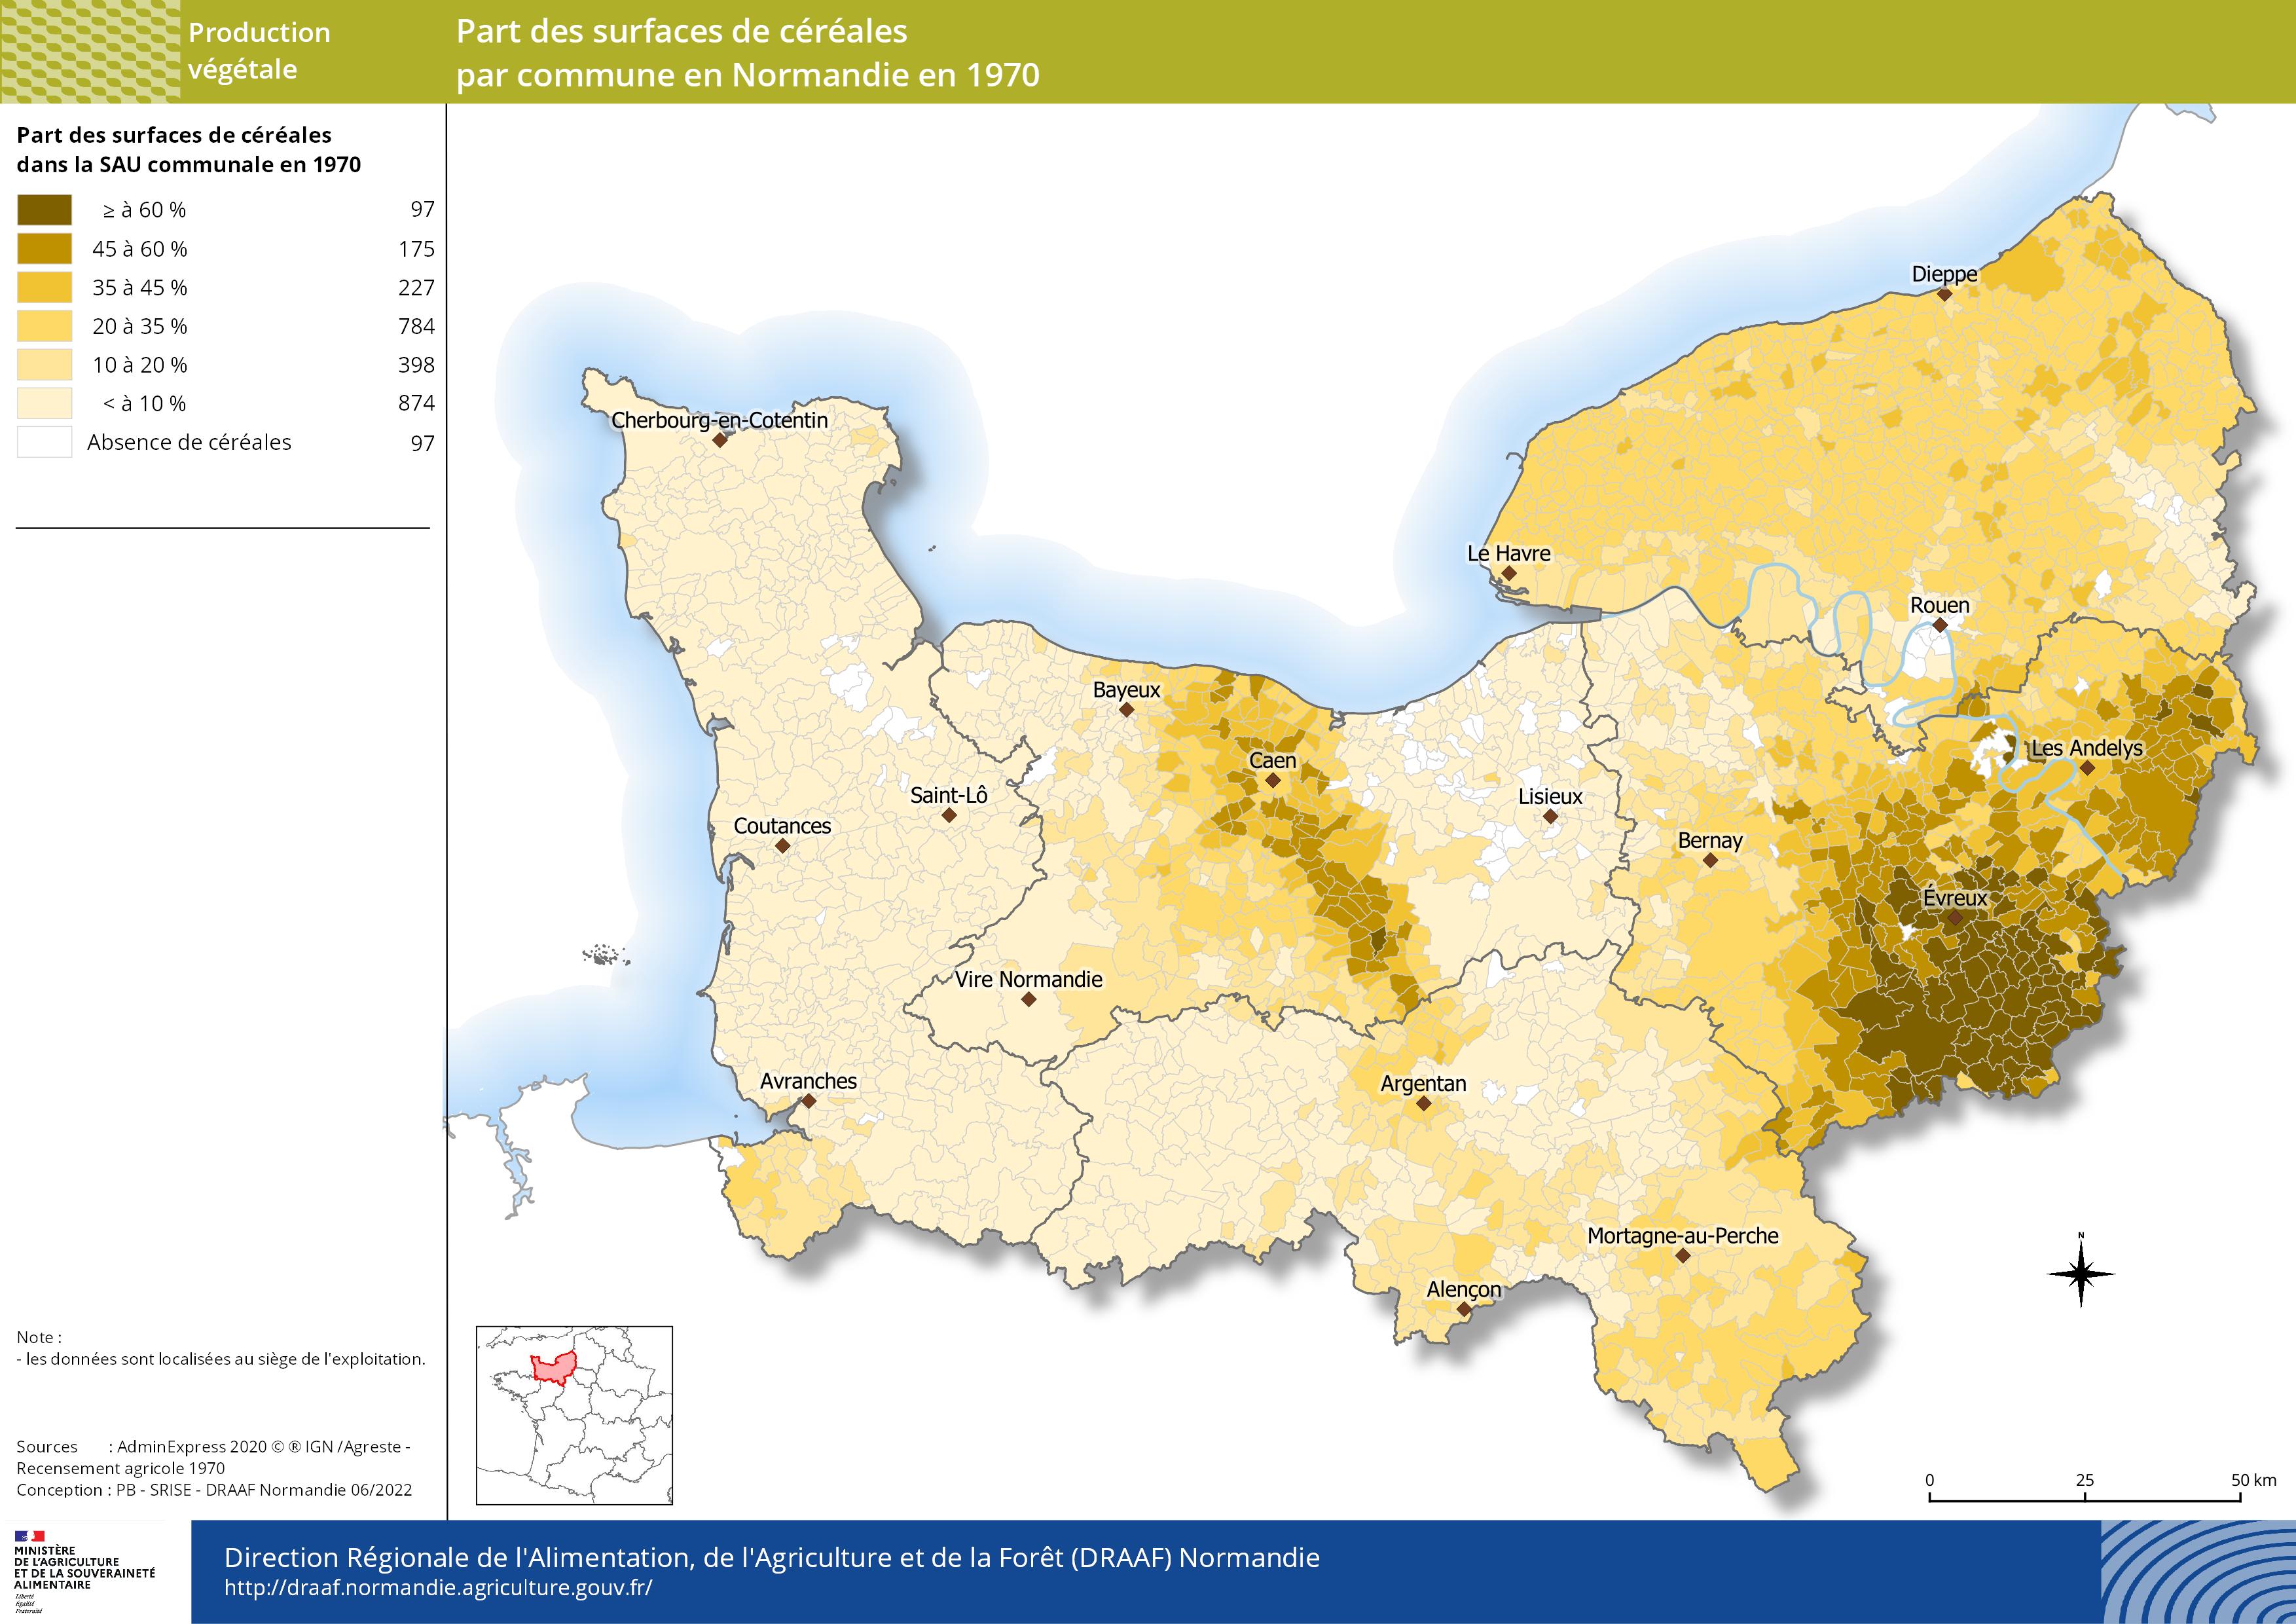 carte représentant la part des surfaces de céréales par commune en Normandie en 1970